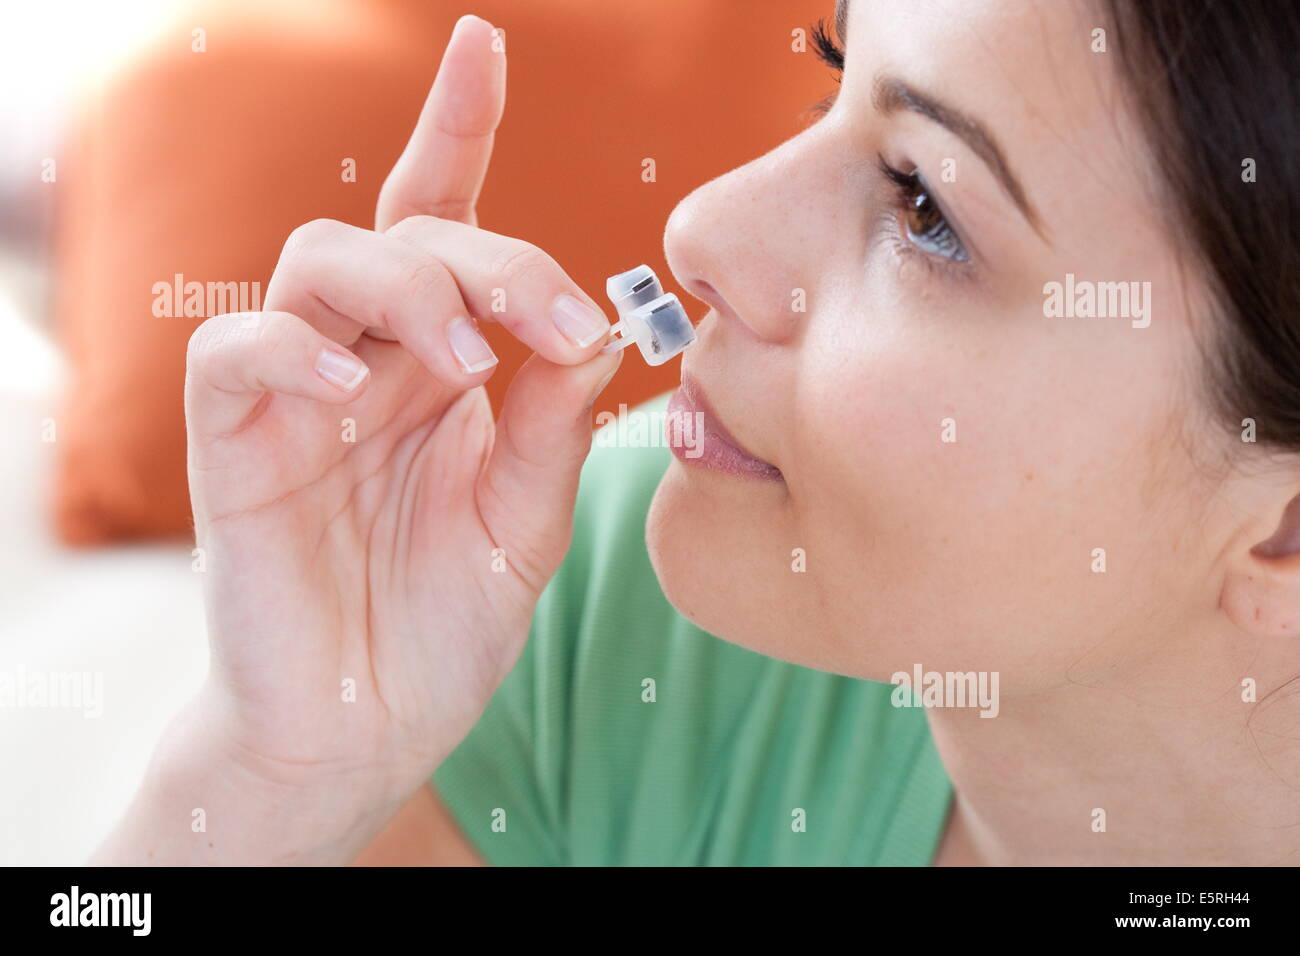 Femme à l'aide d'un filtre nasal Nosecaps® contre les allergies, la pollution ou le ronflement. Banque D'Images